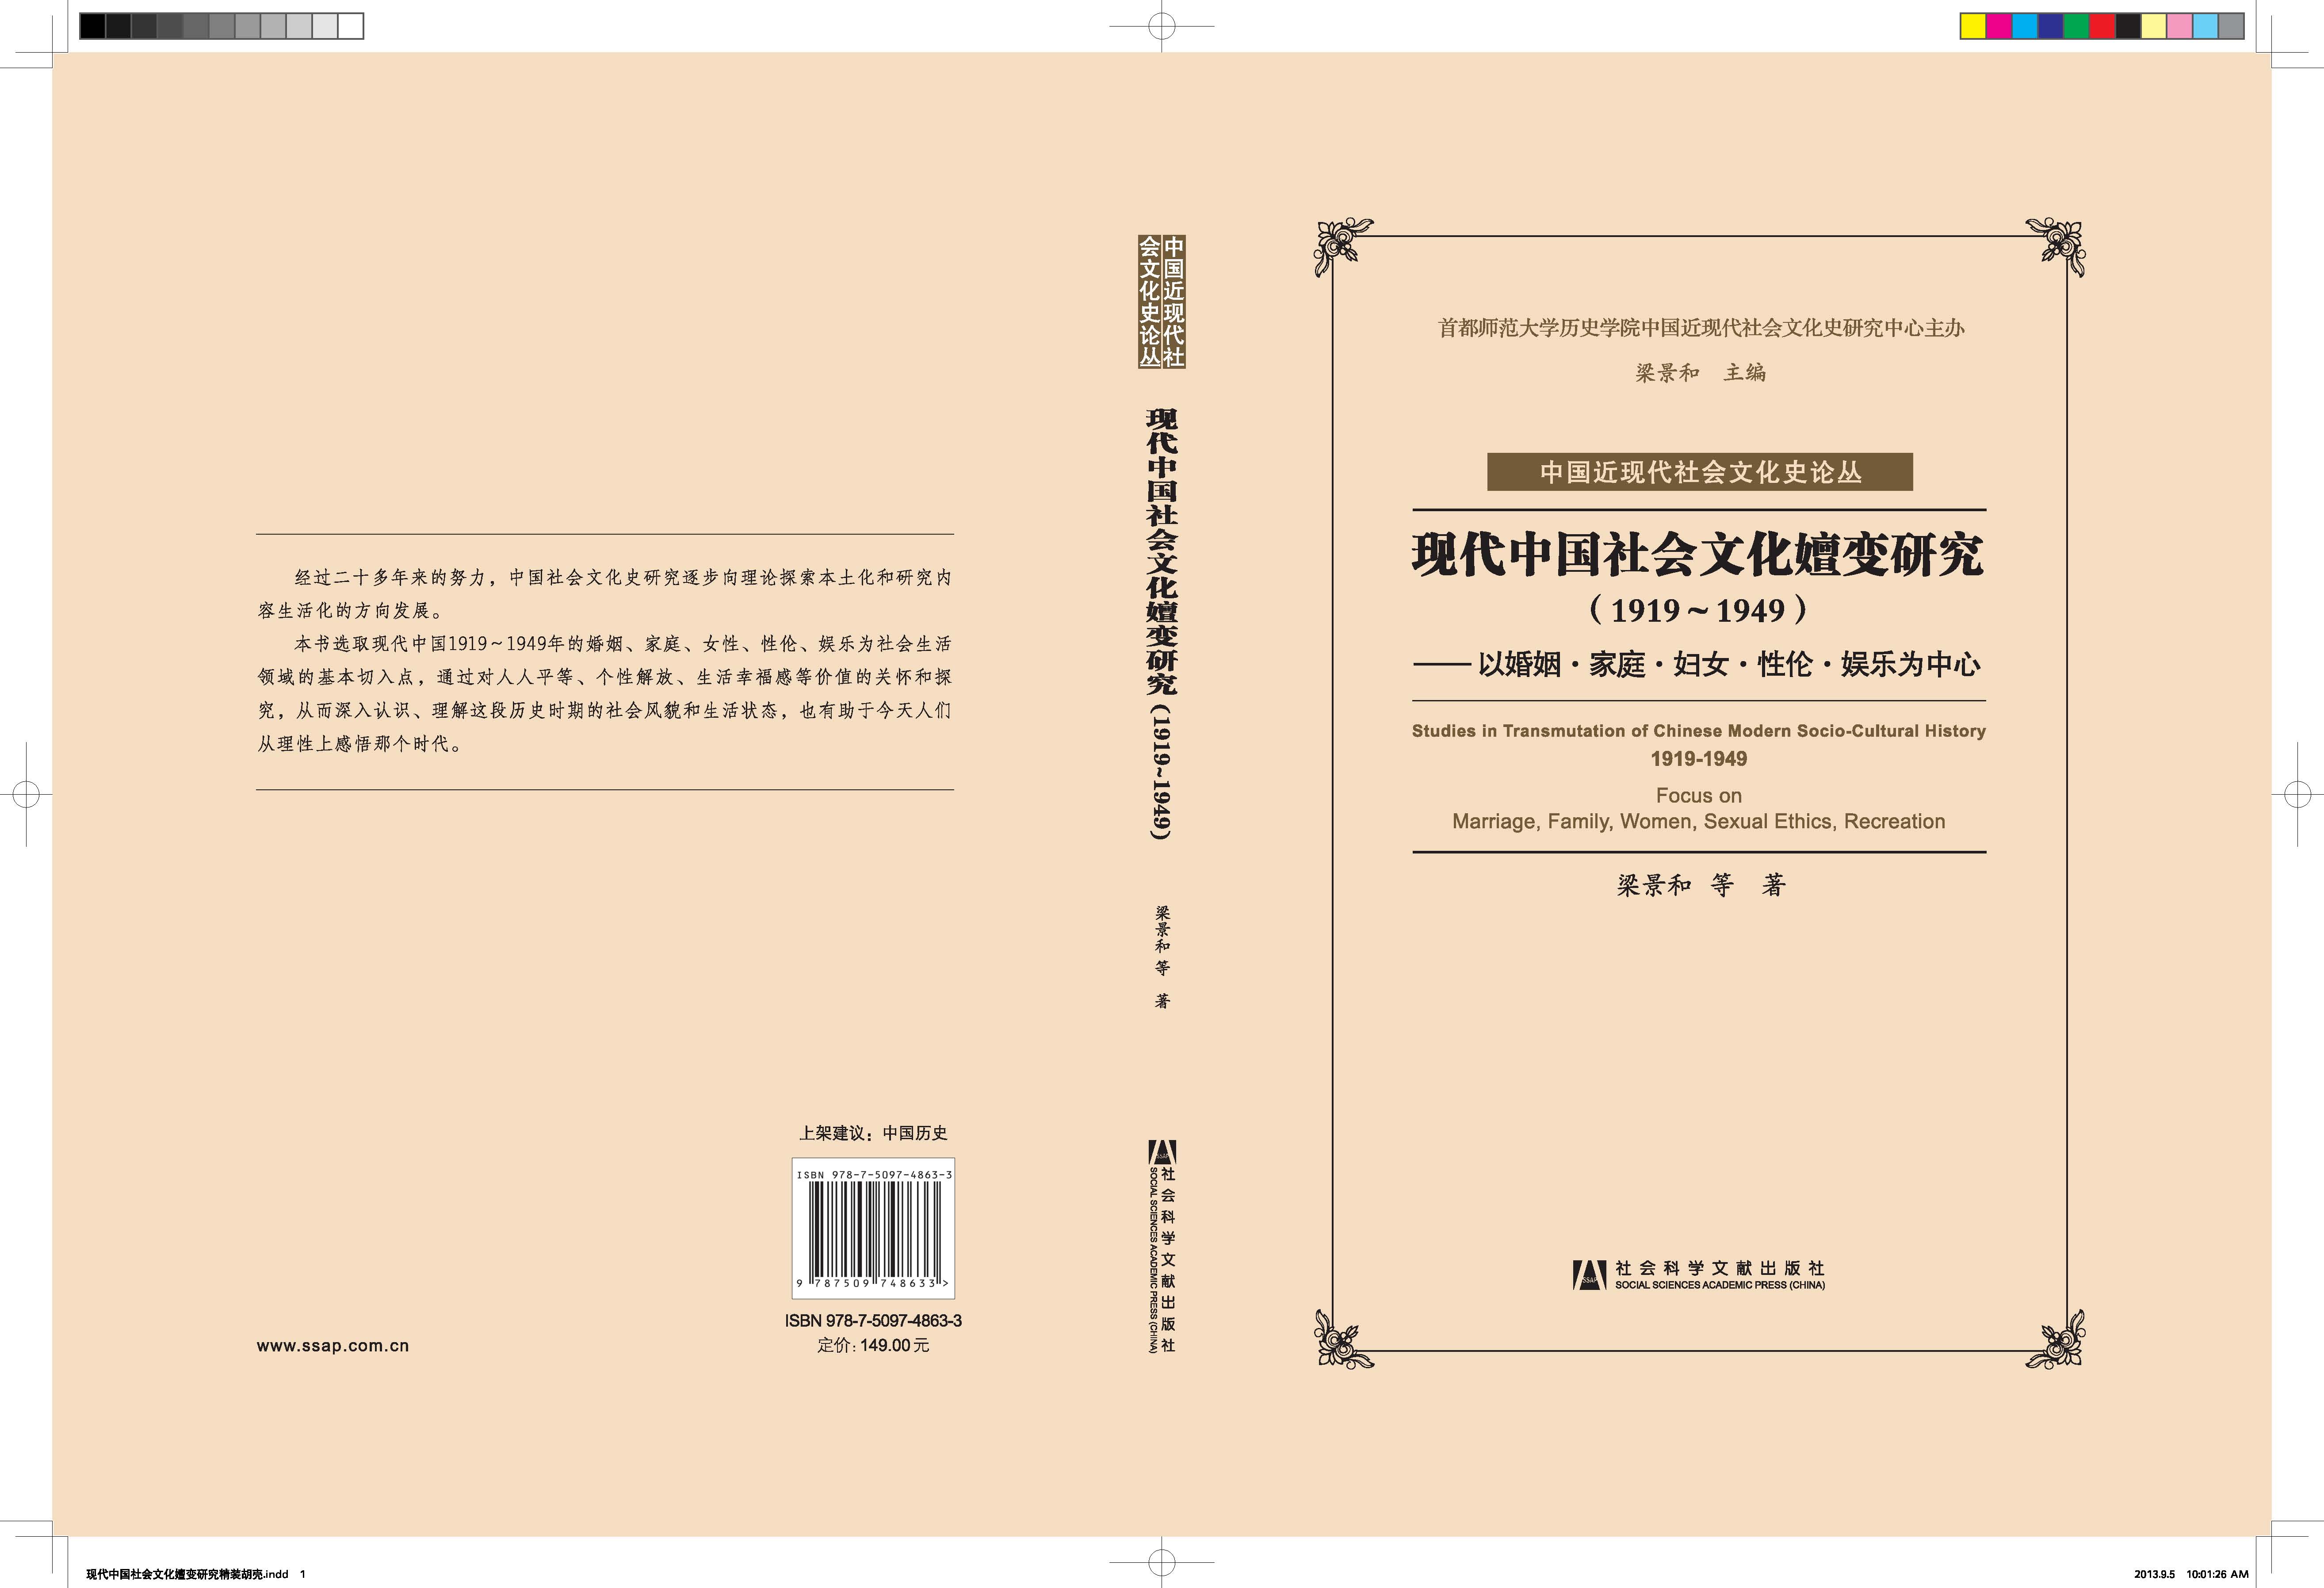 现代中国社会文化嬗变研究(1919-1949)